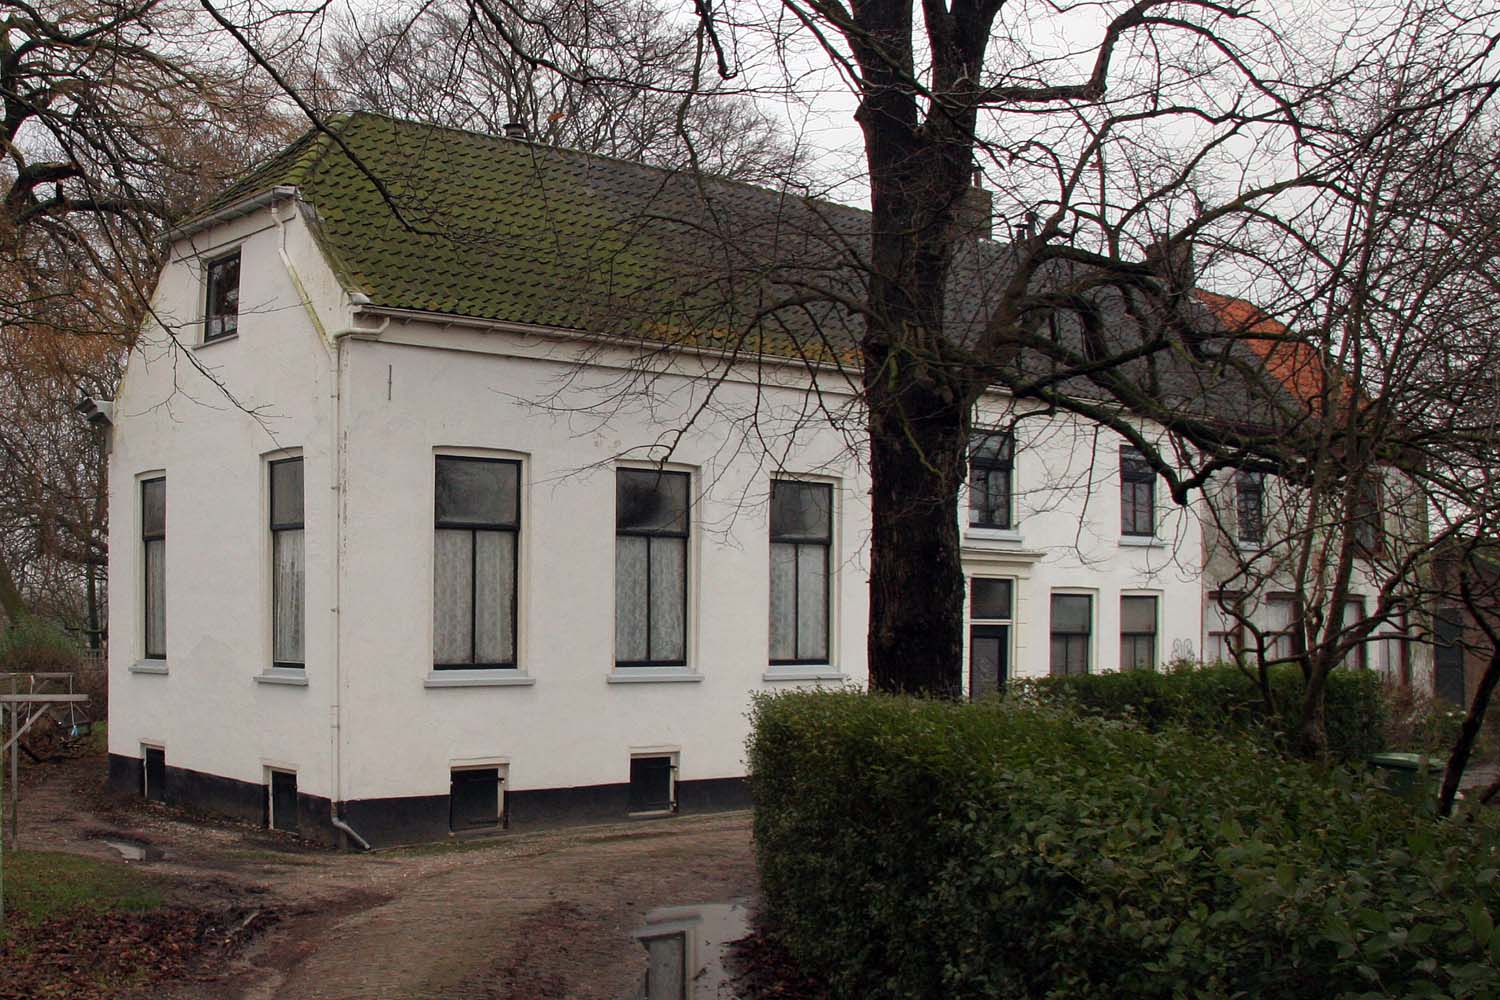 Voorhuis van de buitenplaats Hodenpijl met links de grote opkamer (zaal).